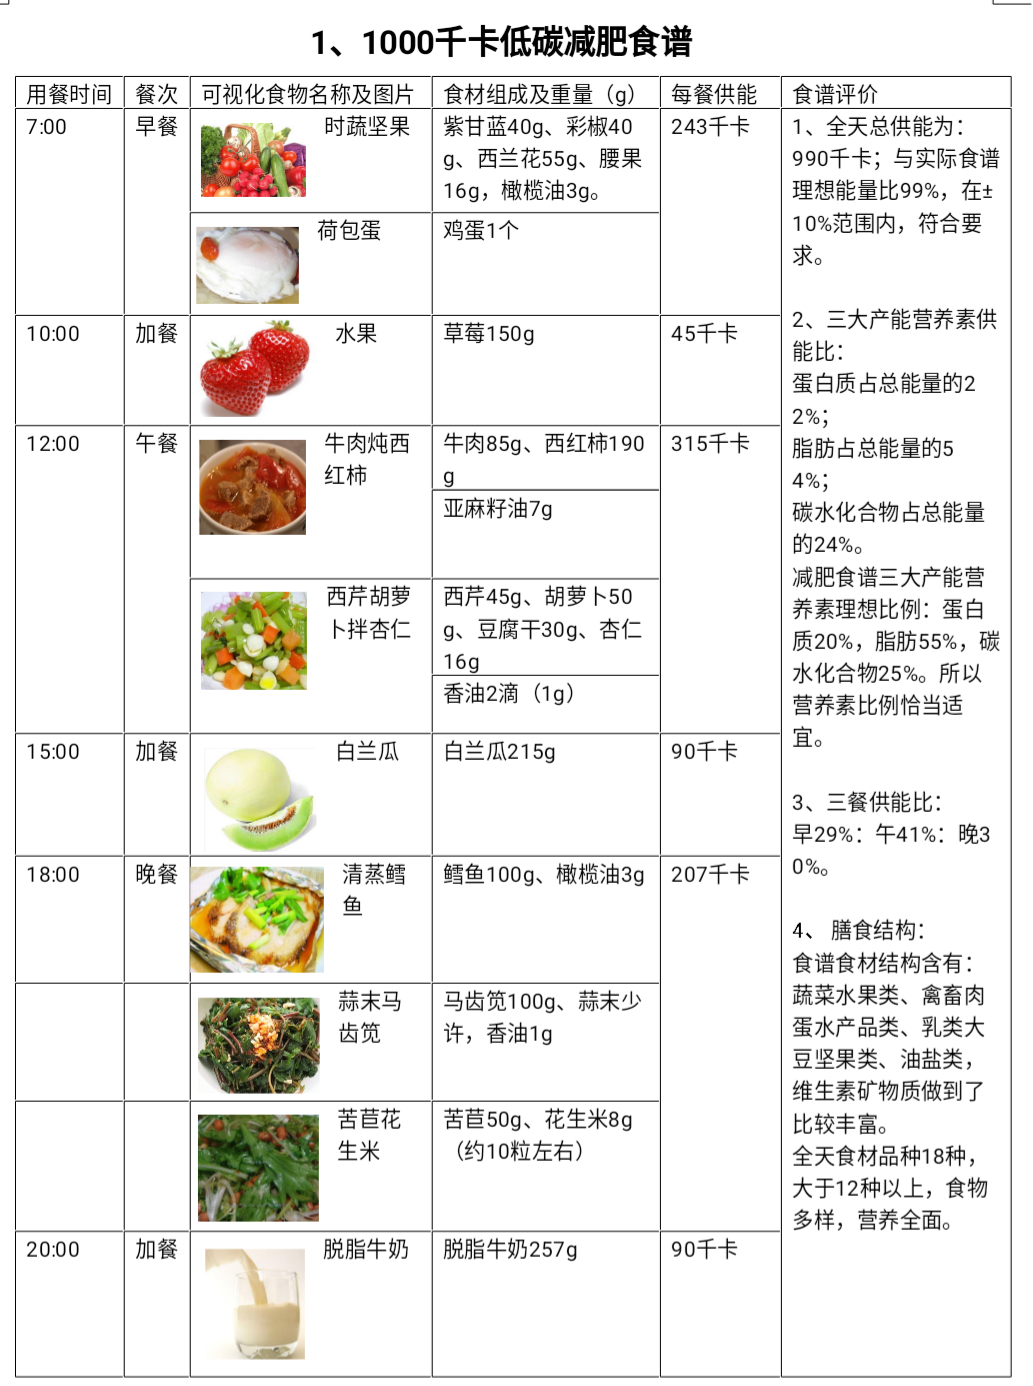 正常的减肥饮食菜单(减肥饮食标准)